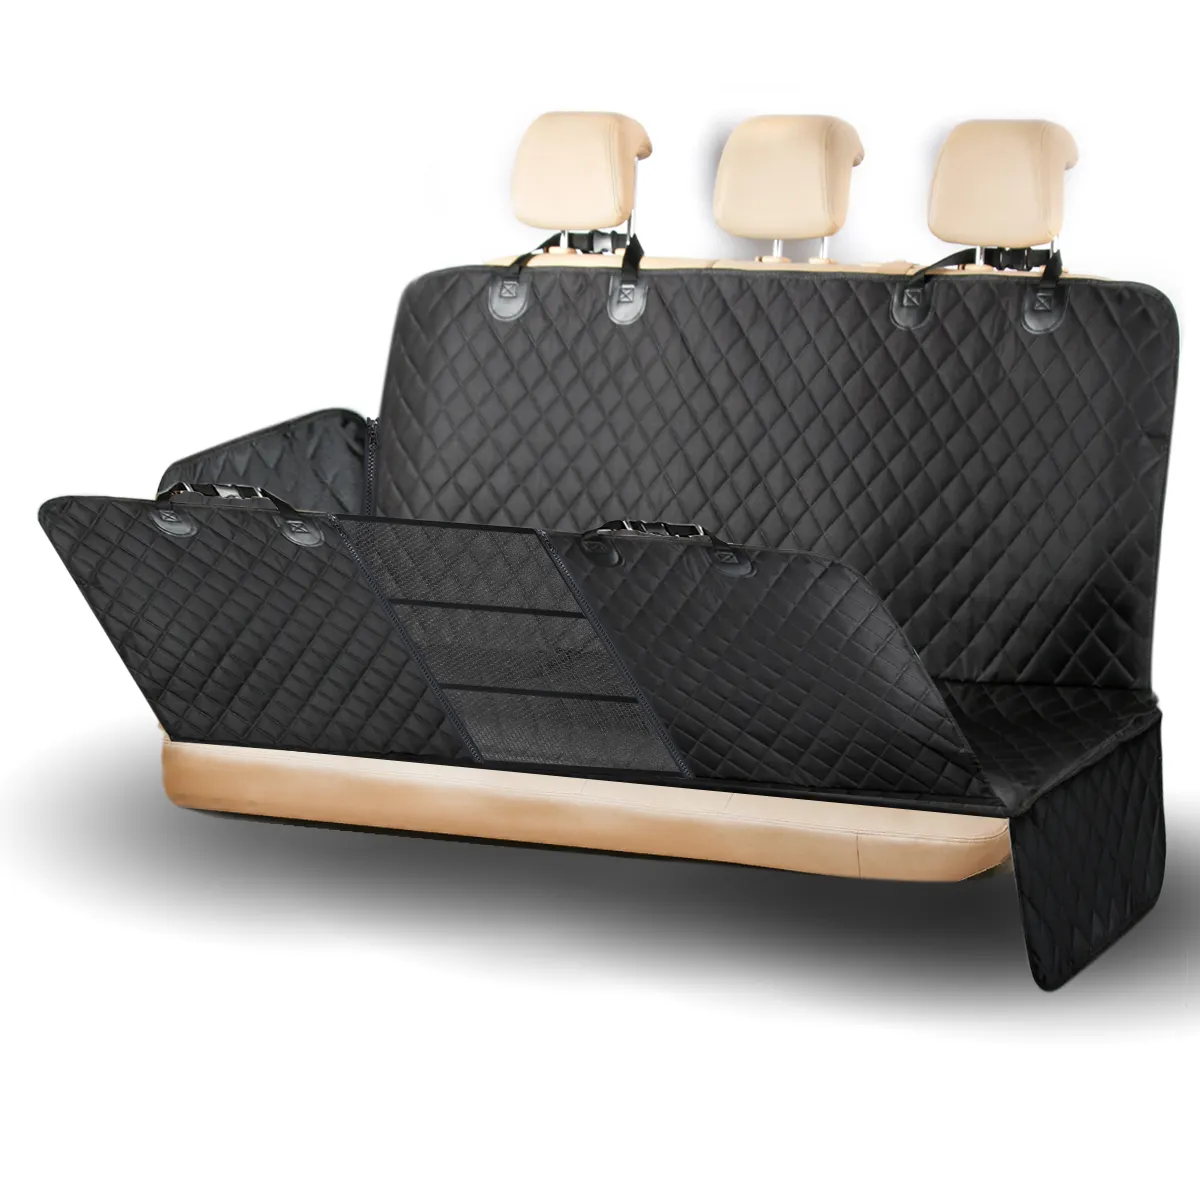 Capas de assento de carro para cachorros, capas de malha com zíper universais projetadas para viagens